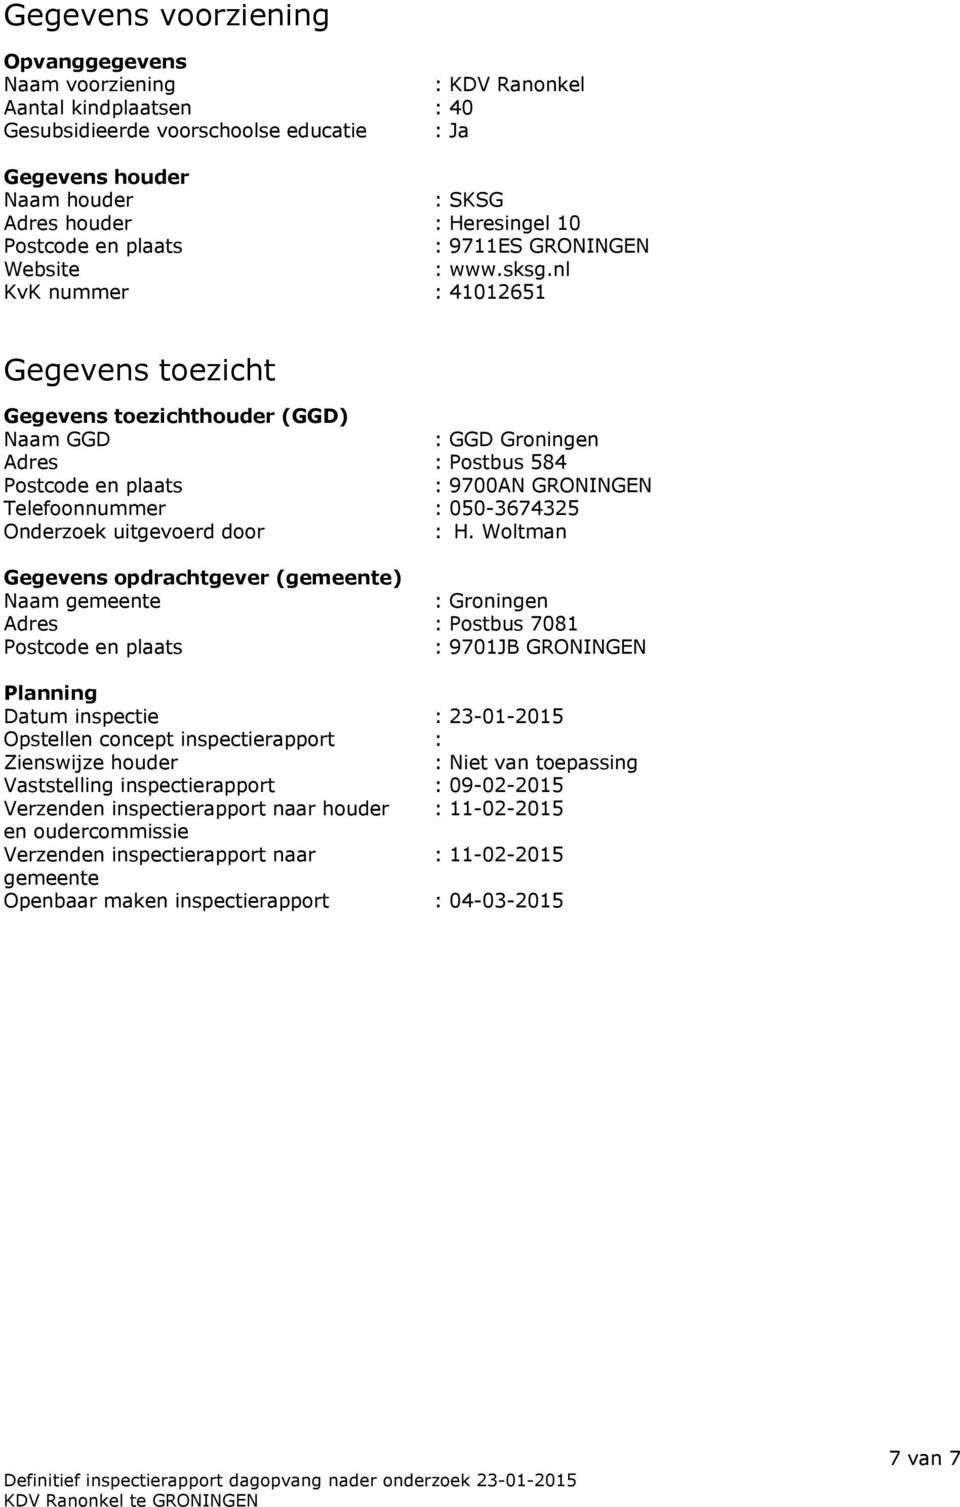 nl KvK nummer : 41012651 Gegevens toezicht Gegevens toezichthouder (GGD) Naam GGD : GGD Groningen Adres : Postbus 584 Postcode en plaats : 9700AN GRONINGEN Telefoonnummer : 050-3674325 Onderzoek